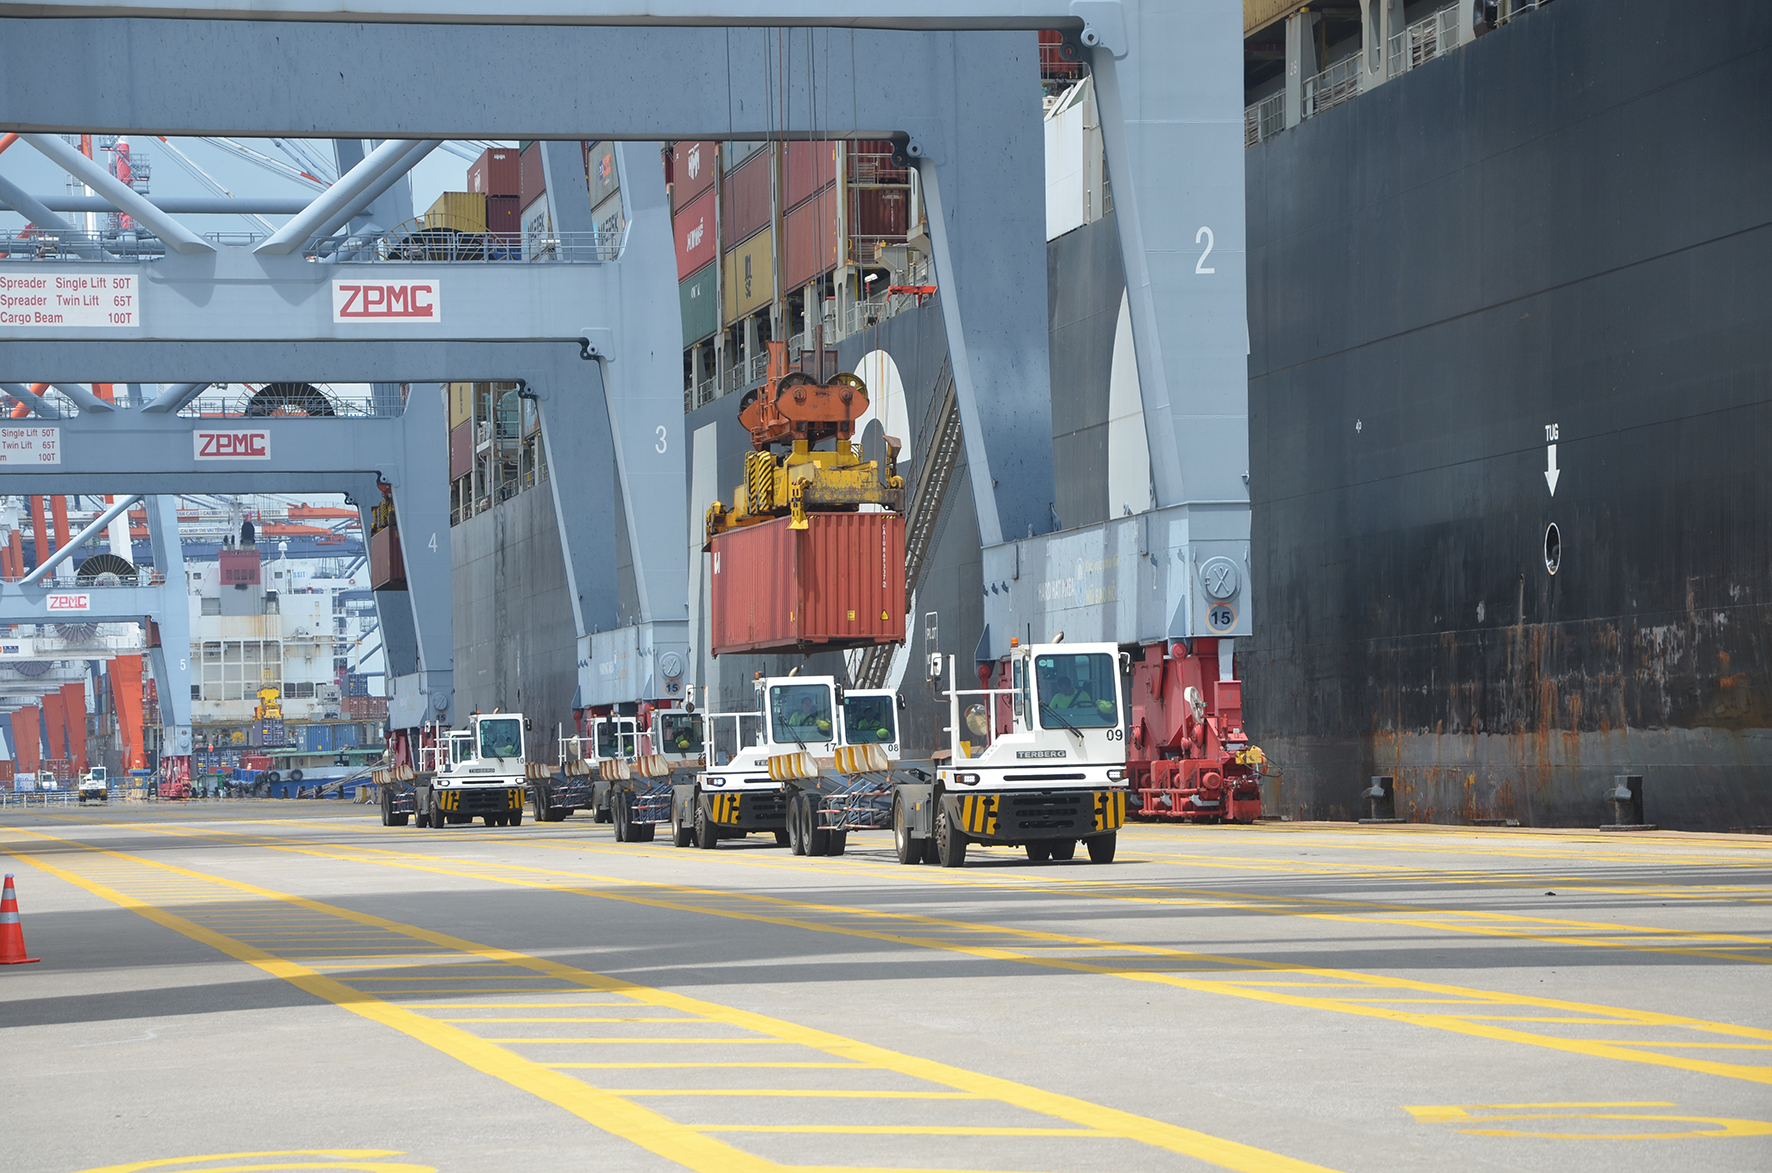 Cảng CMIT luôn một trong những cảng có năng suất xếp dỡ cao nhất trong cụm cảng CM-TV với năng suất 32 container/giờ.